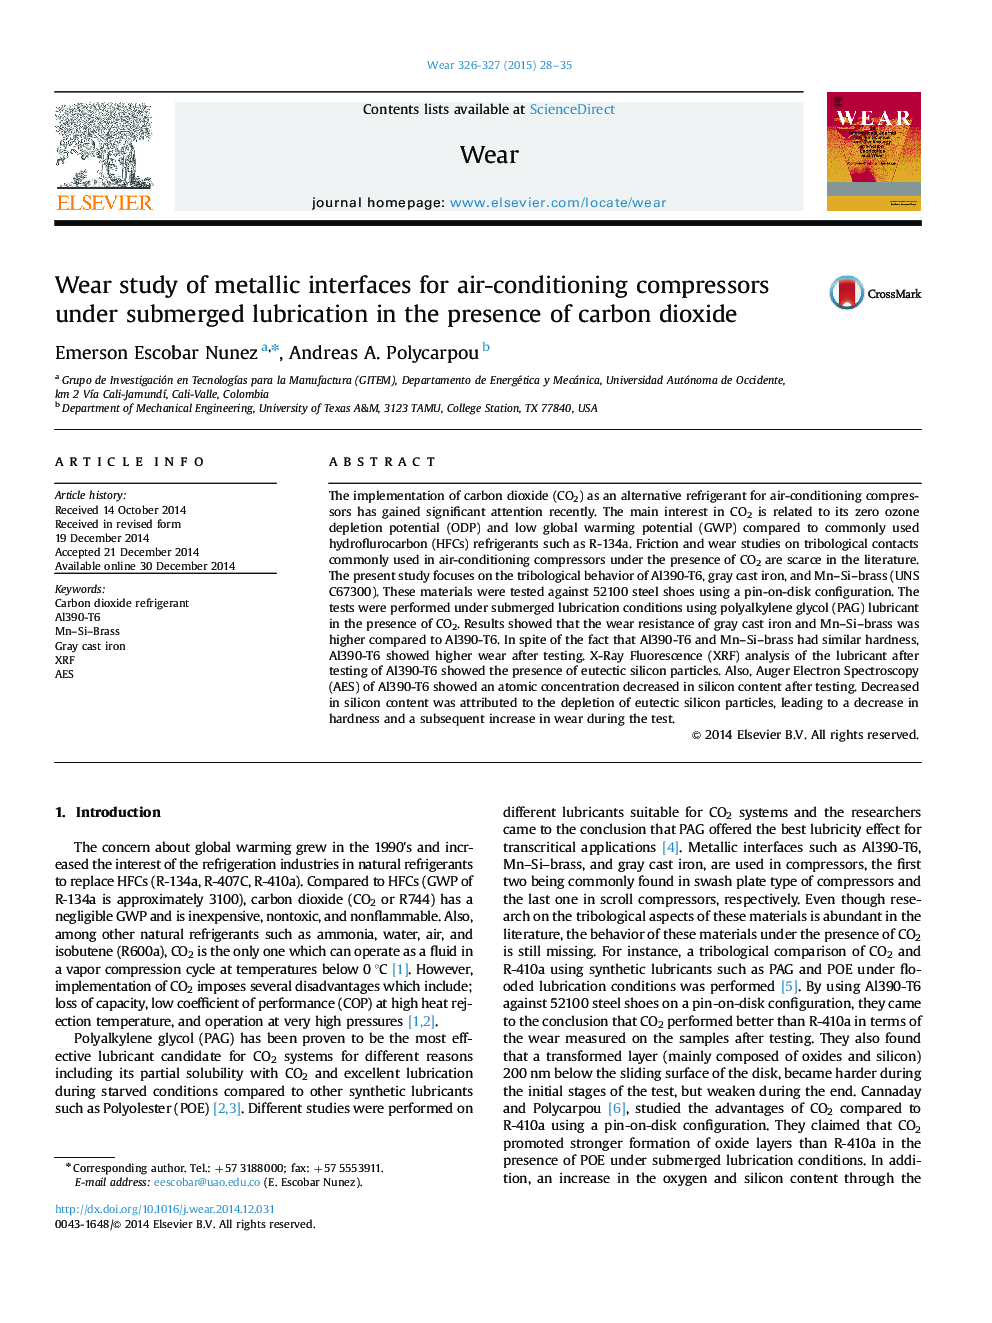 مطالعه در مورد رابط های فلزی برای کمپرسورهای تهویه مطبوع تحت روانکاری زیر آب در حضور دی اکسید کربن 